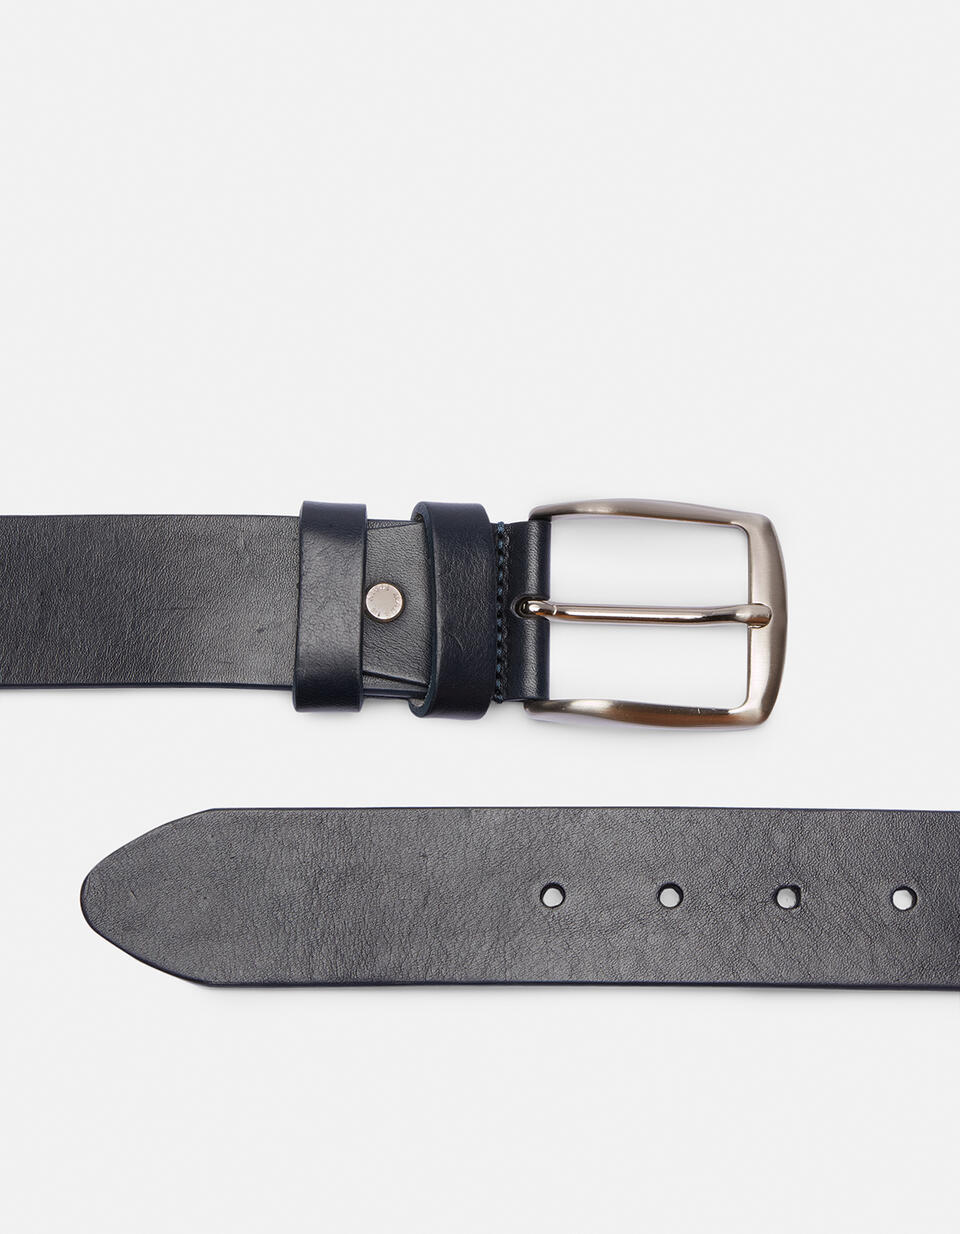 Cintura Classica in cuoio senza cuciture altezza 4,0 cm - CINTURE UOMO | CINTURE  - CINTURE UOMO | CINTURECuoieria Fiorentina